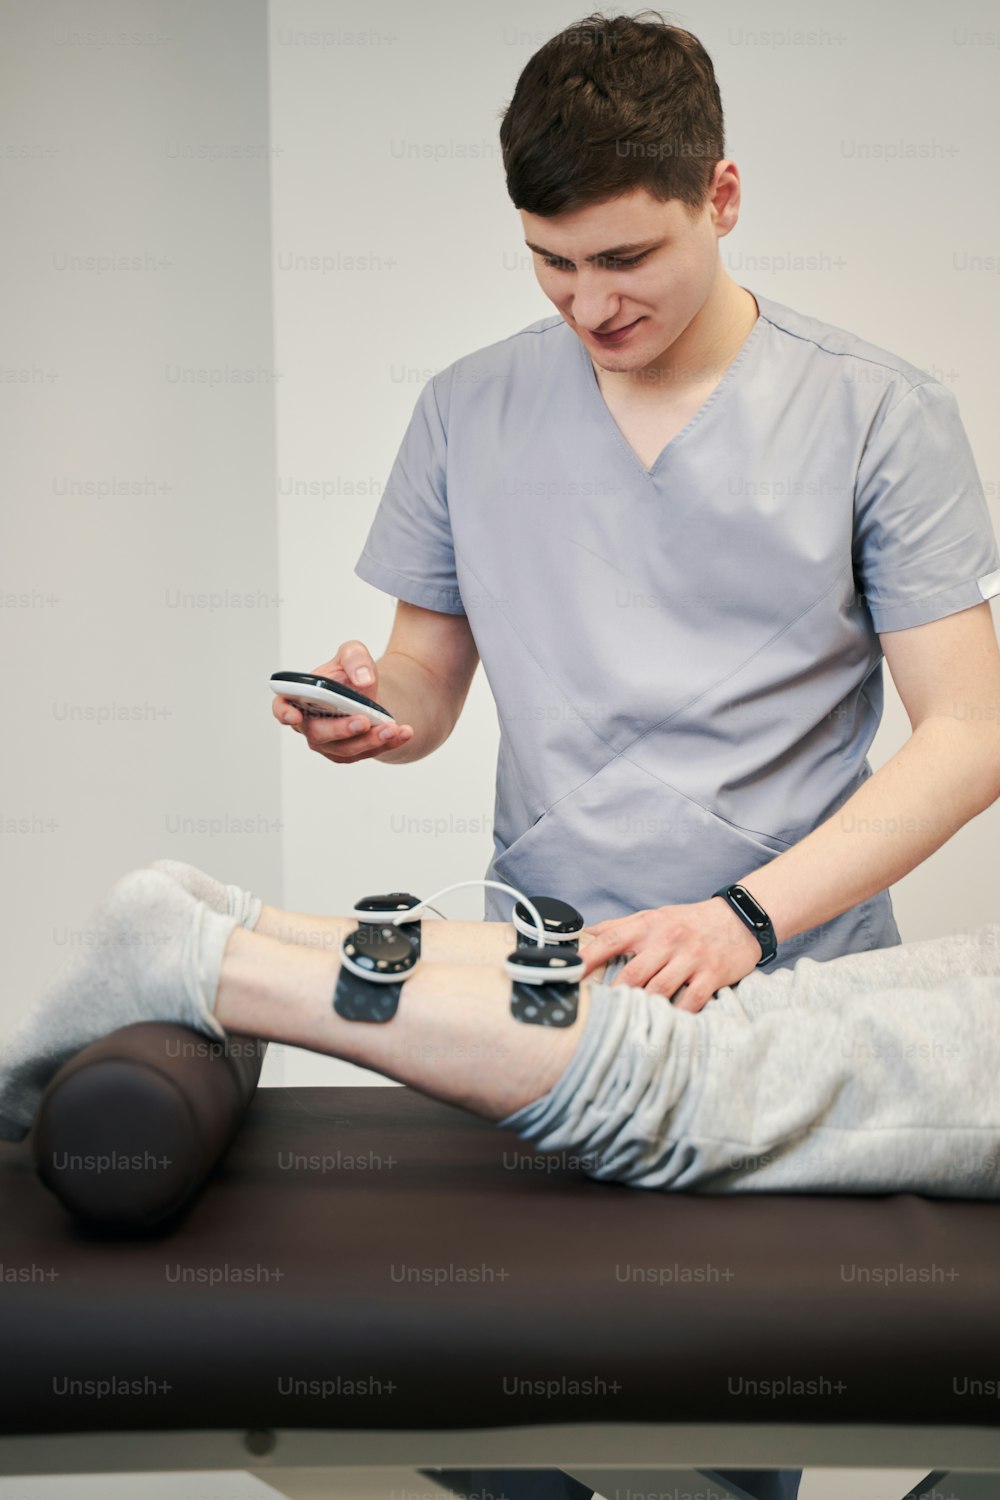 Elettrodi a scatto professionali medici che premono sulla gamba della persona mentre toccano il display dell'unità di stimolazione muscolare